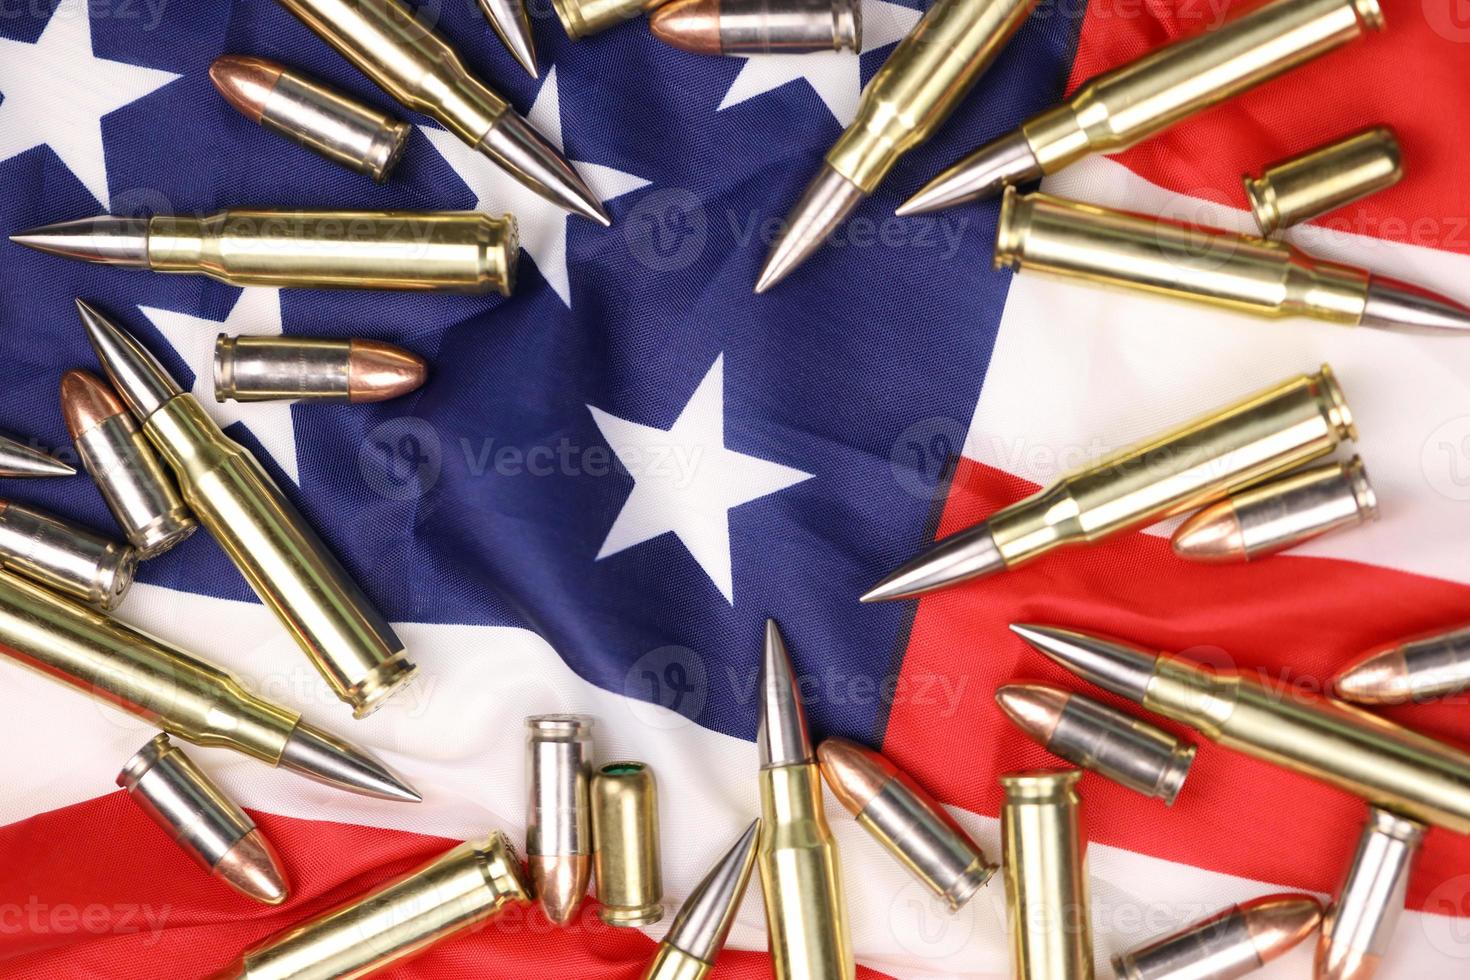 veel geel 9 mm en 5.56mm kogels en inktpatronen Aan Verenigde staten vlag. concept van geweer mensenhandel Aan Verenigde Staten van Amerika gebied of speciaal ops foto